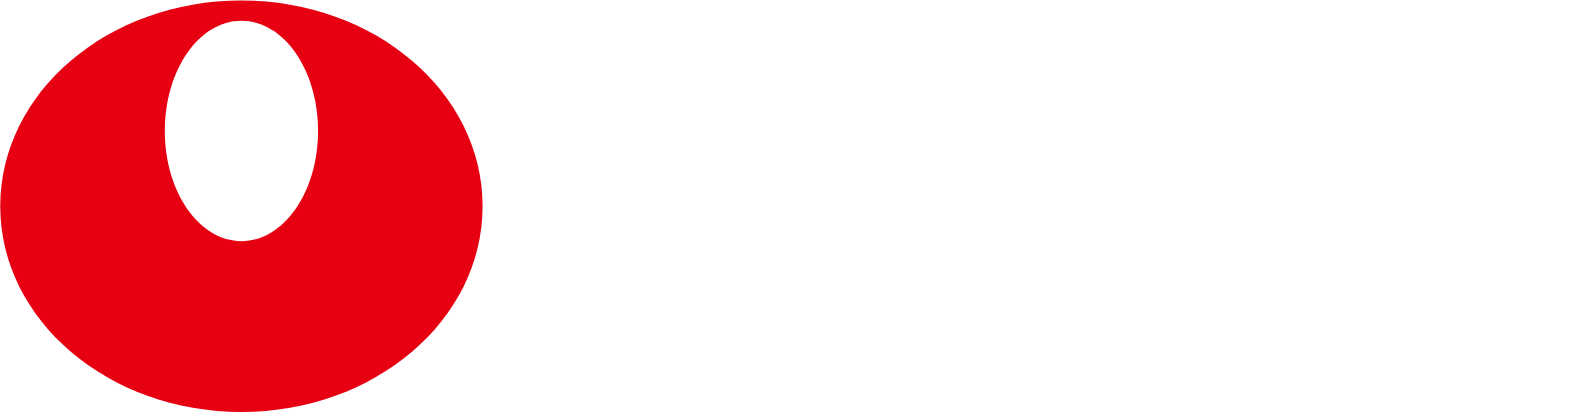 Nongshim logo large for dark backgrounds (transparent PNG)